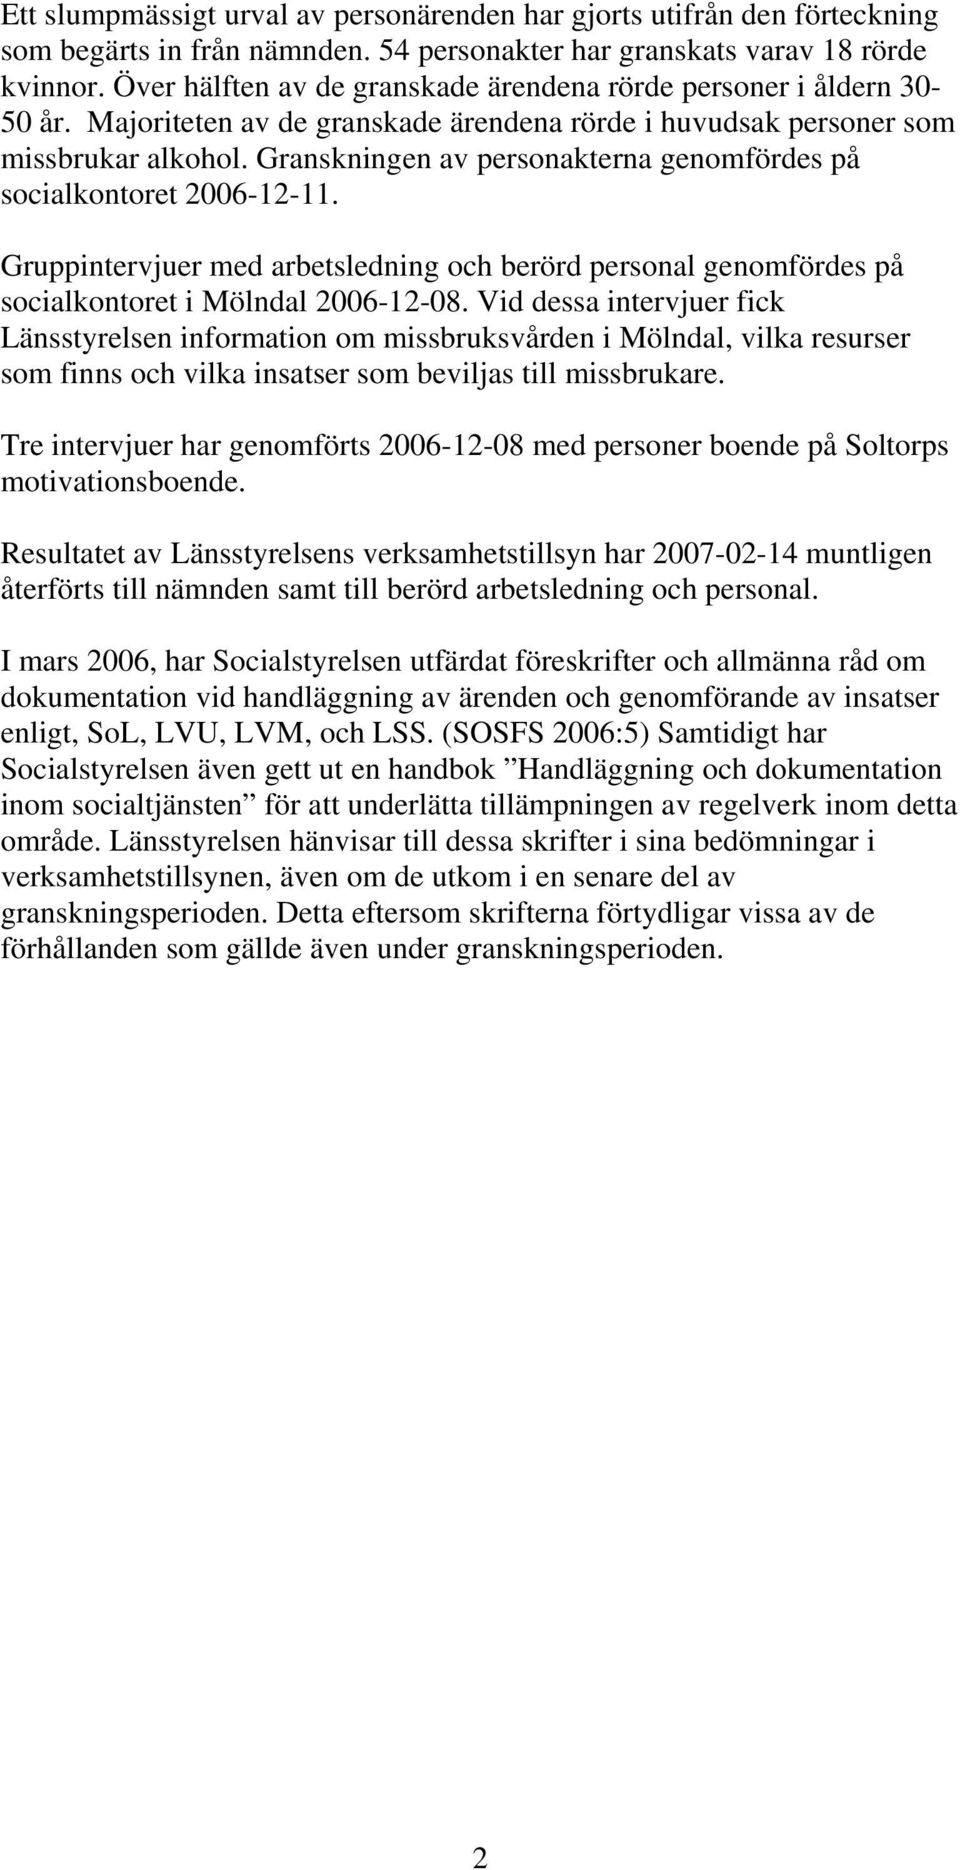 Granskningen av personakterna genomfördes på socialkontoret 2006-12-11. Gruppintervjuer med arbetsledning och berörd personal genomfördes på socialkontoret i Mölndal 2006-12-08.